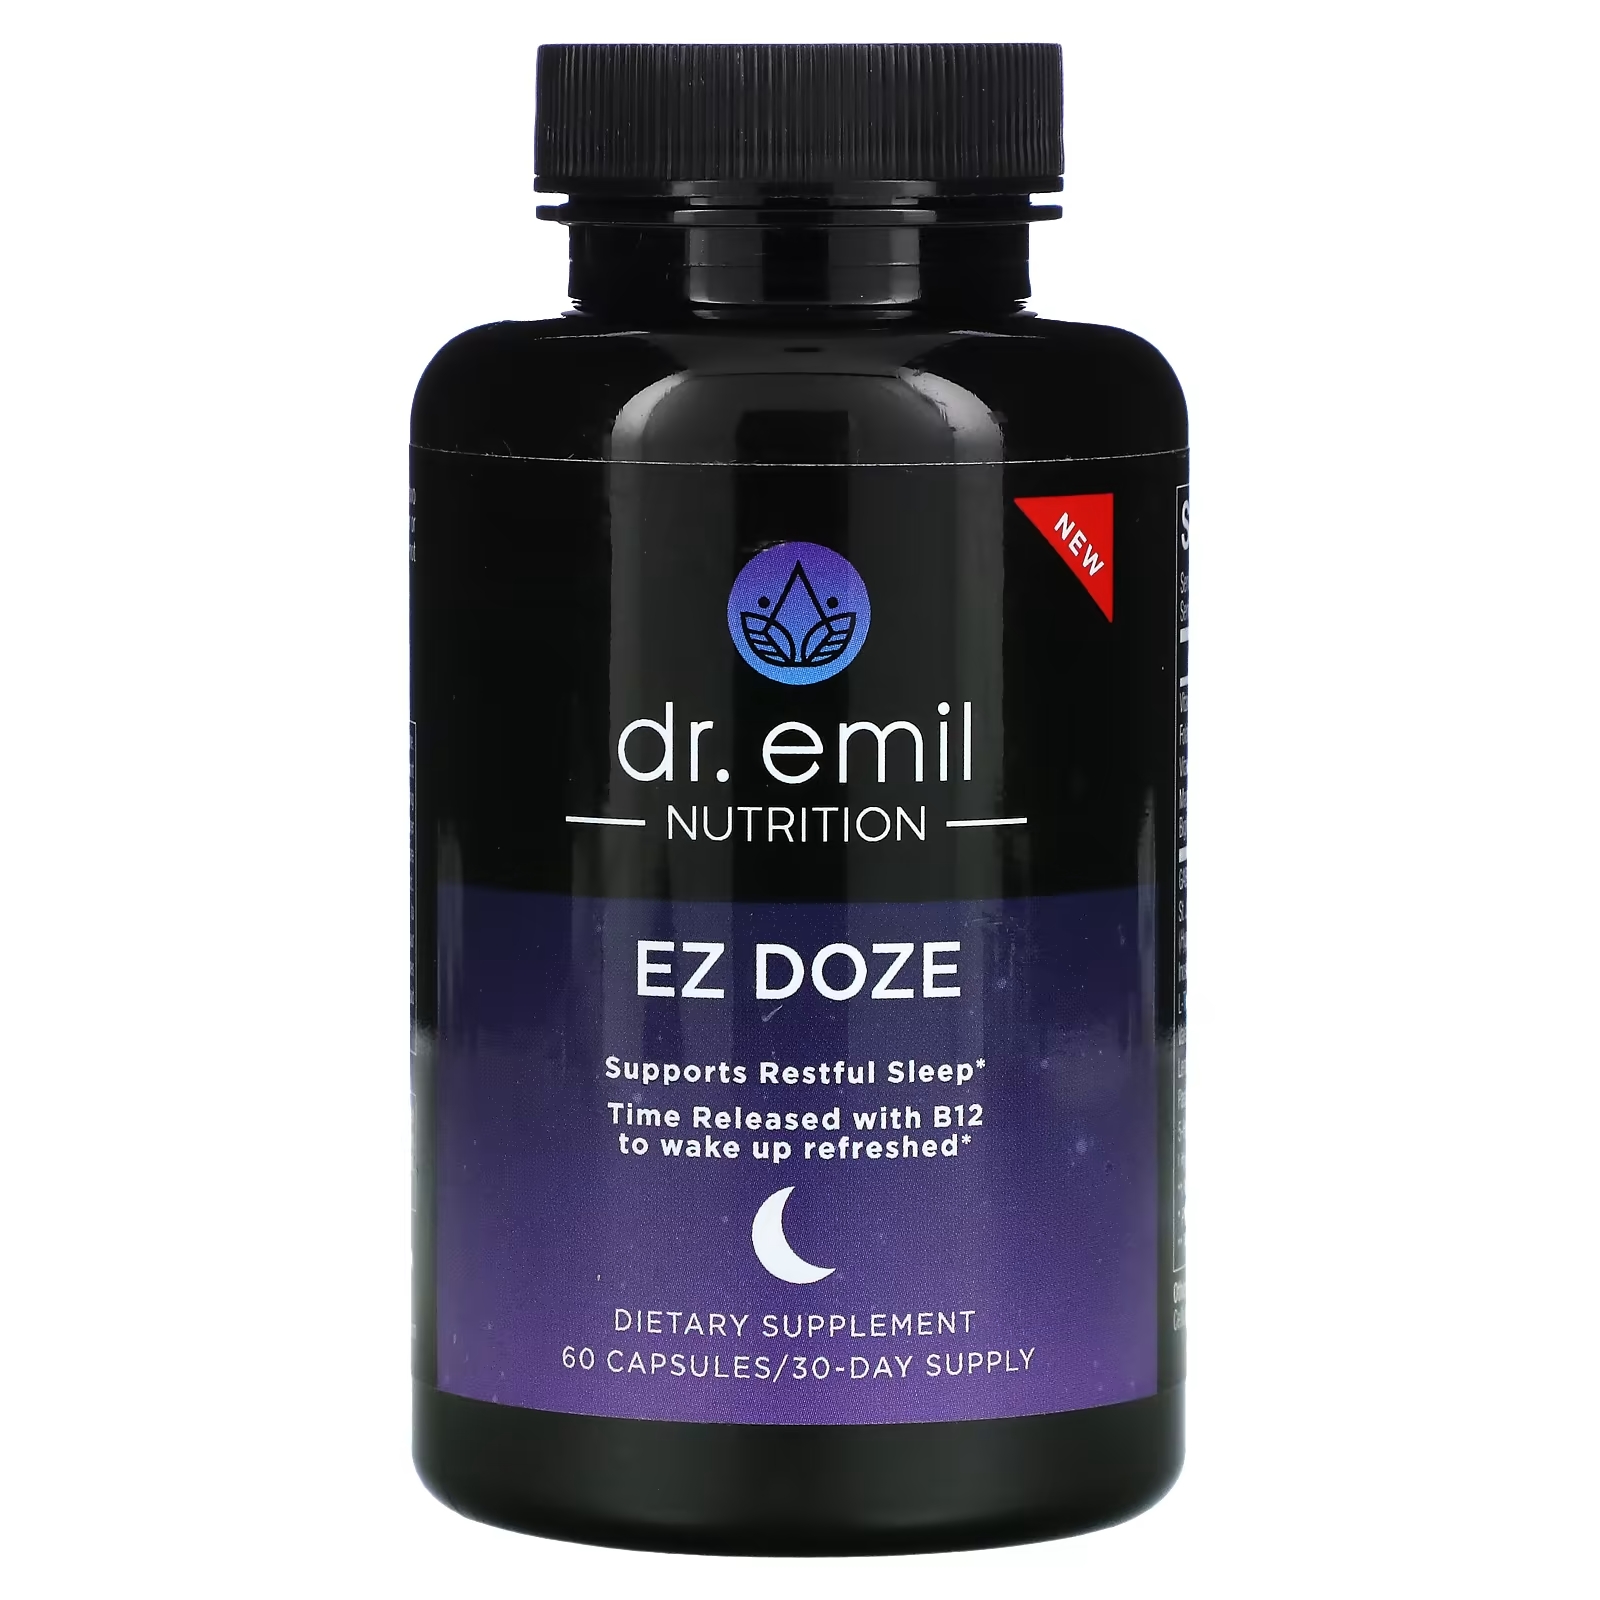 Dr Emil Nutrition EZ DOZE, 60 капсул dr emil nutrition коллаген 90 капсул